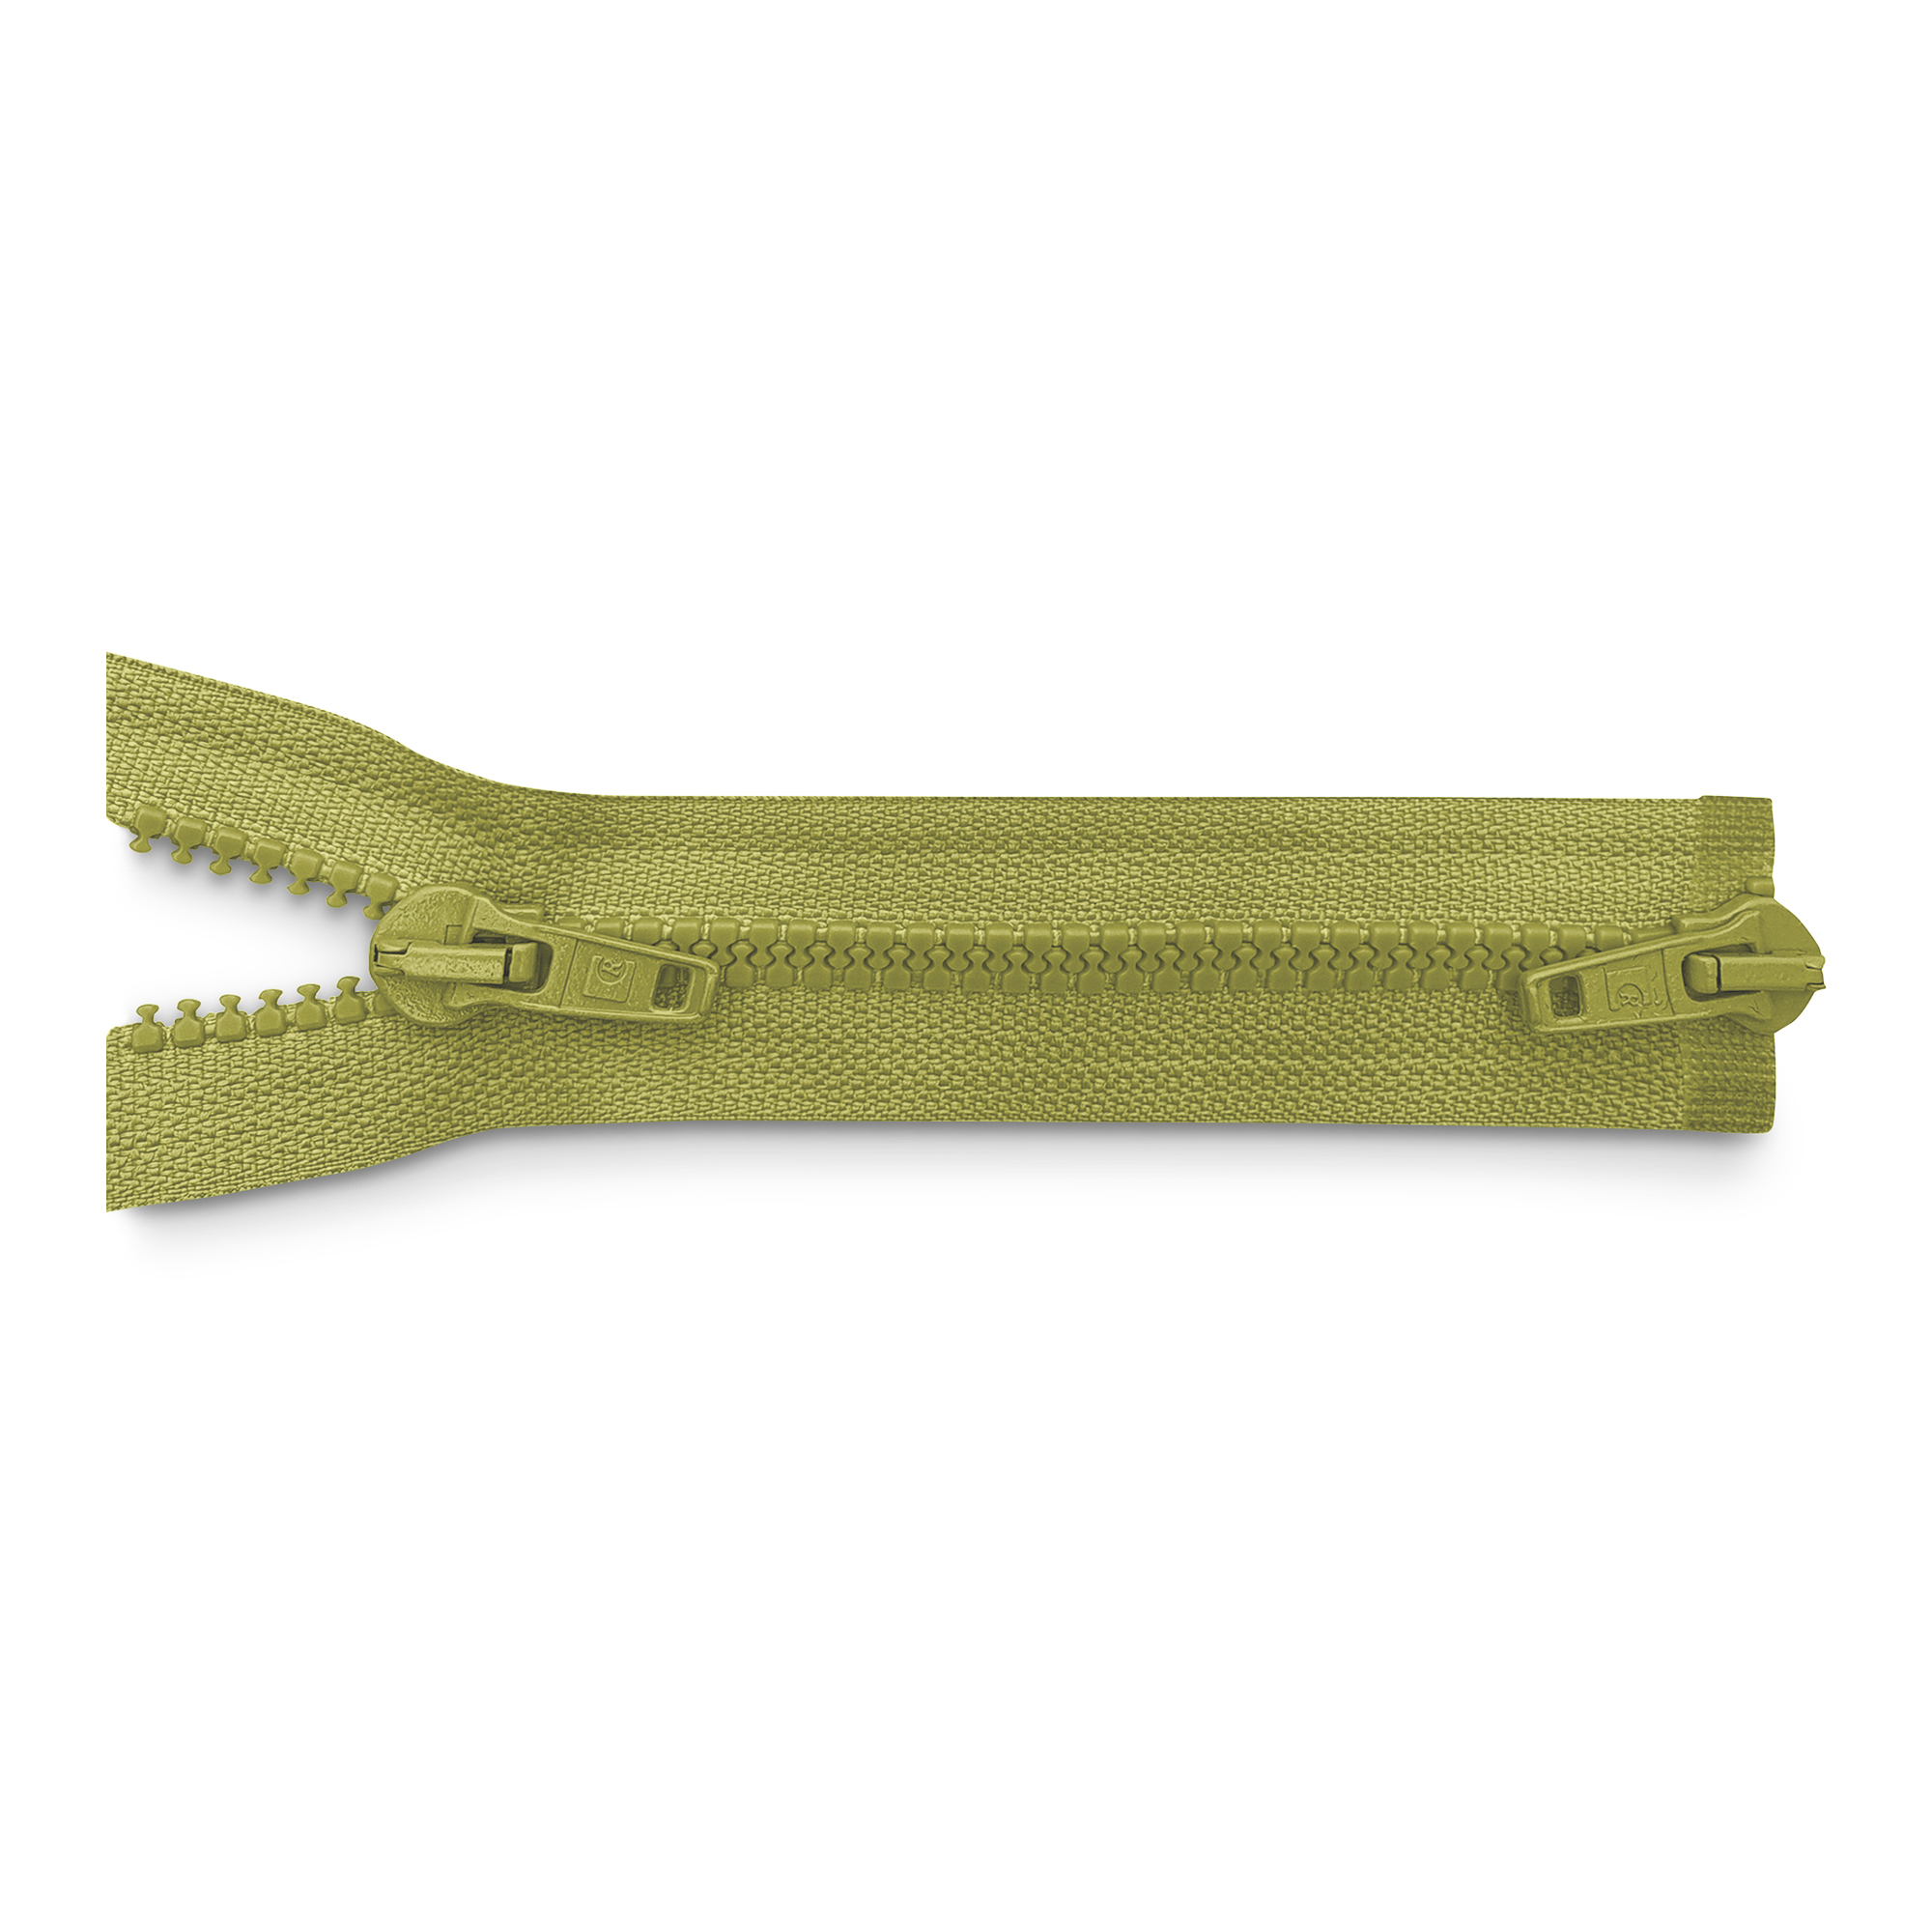 Reißverschluss 100cm, 2-Wege, K.stoff Zähne breit, hell-olivgrün, hochwertiger Marken-Reißverschluss von Rubi/Barcelona